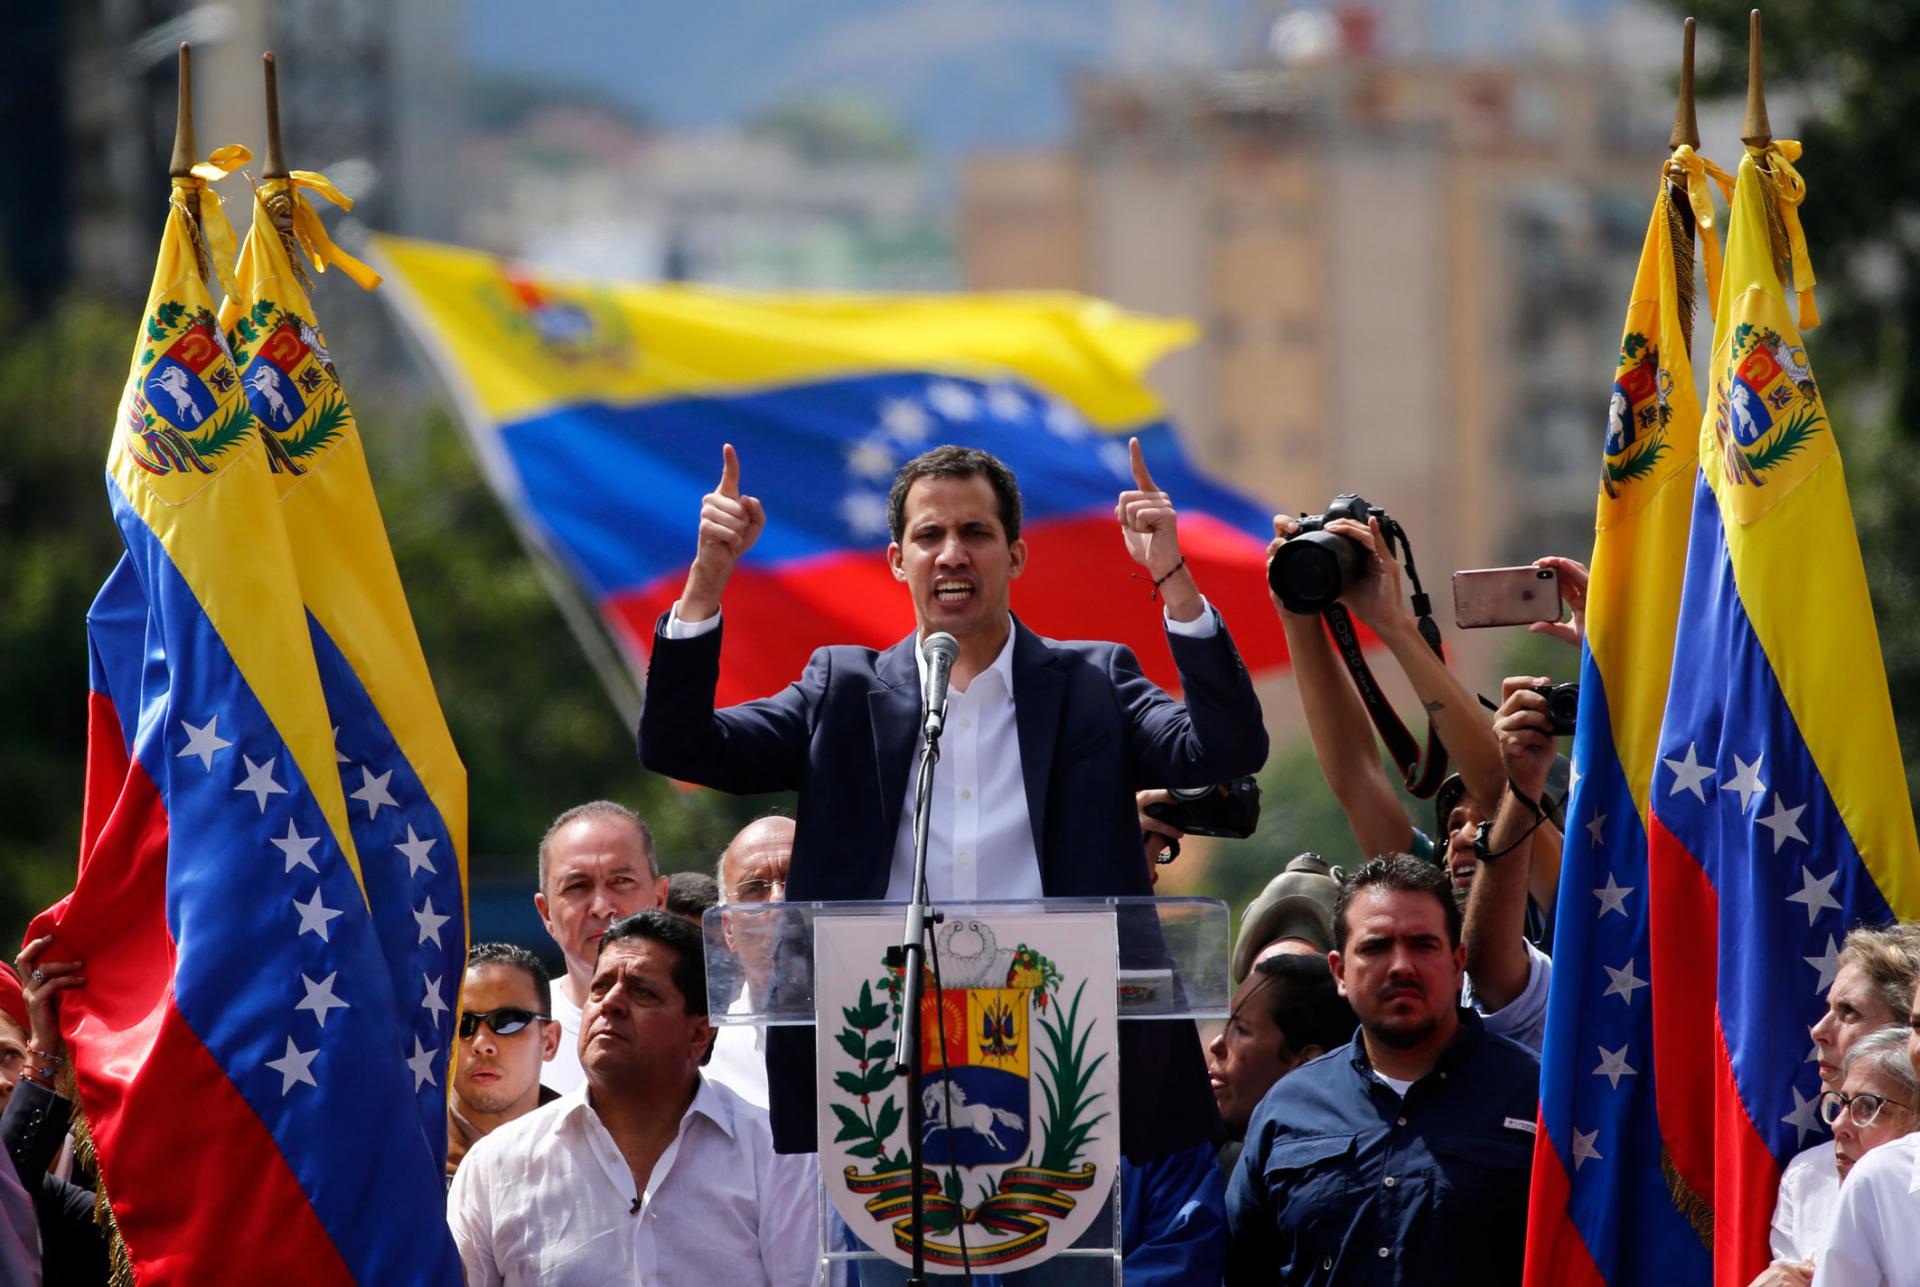 خوان غوايدو رئيس البرلمان الفنزويلي يعلن نفسه رئيسا بالوكالة